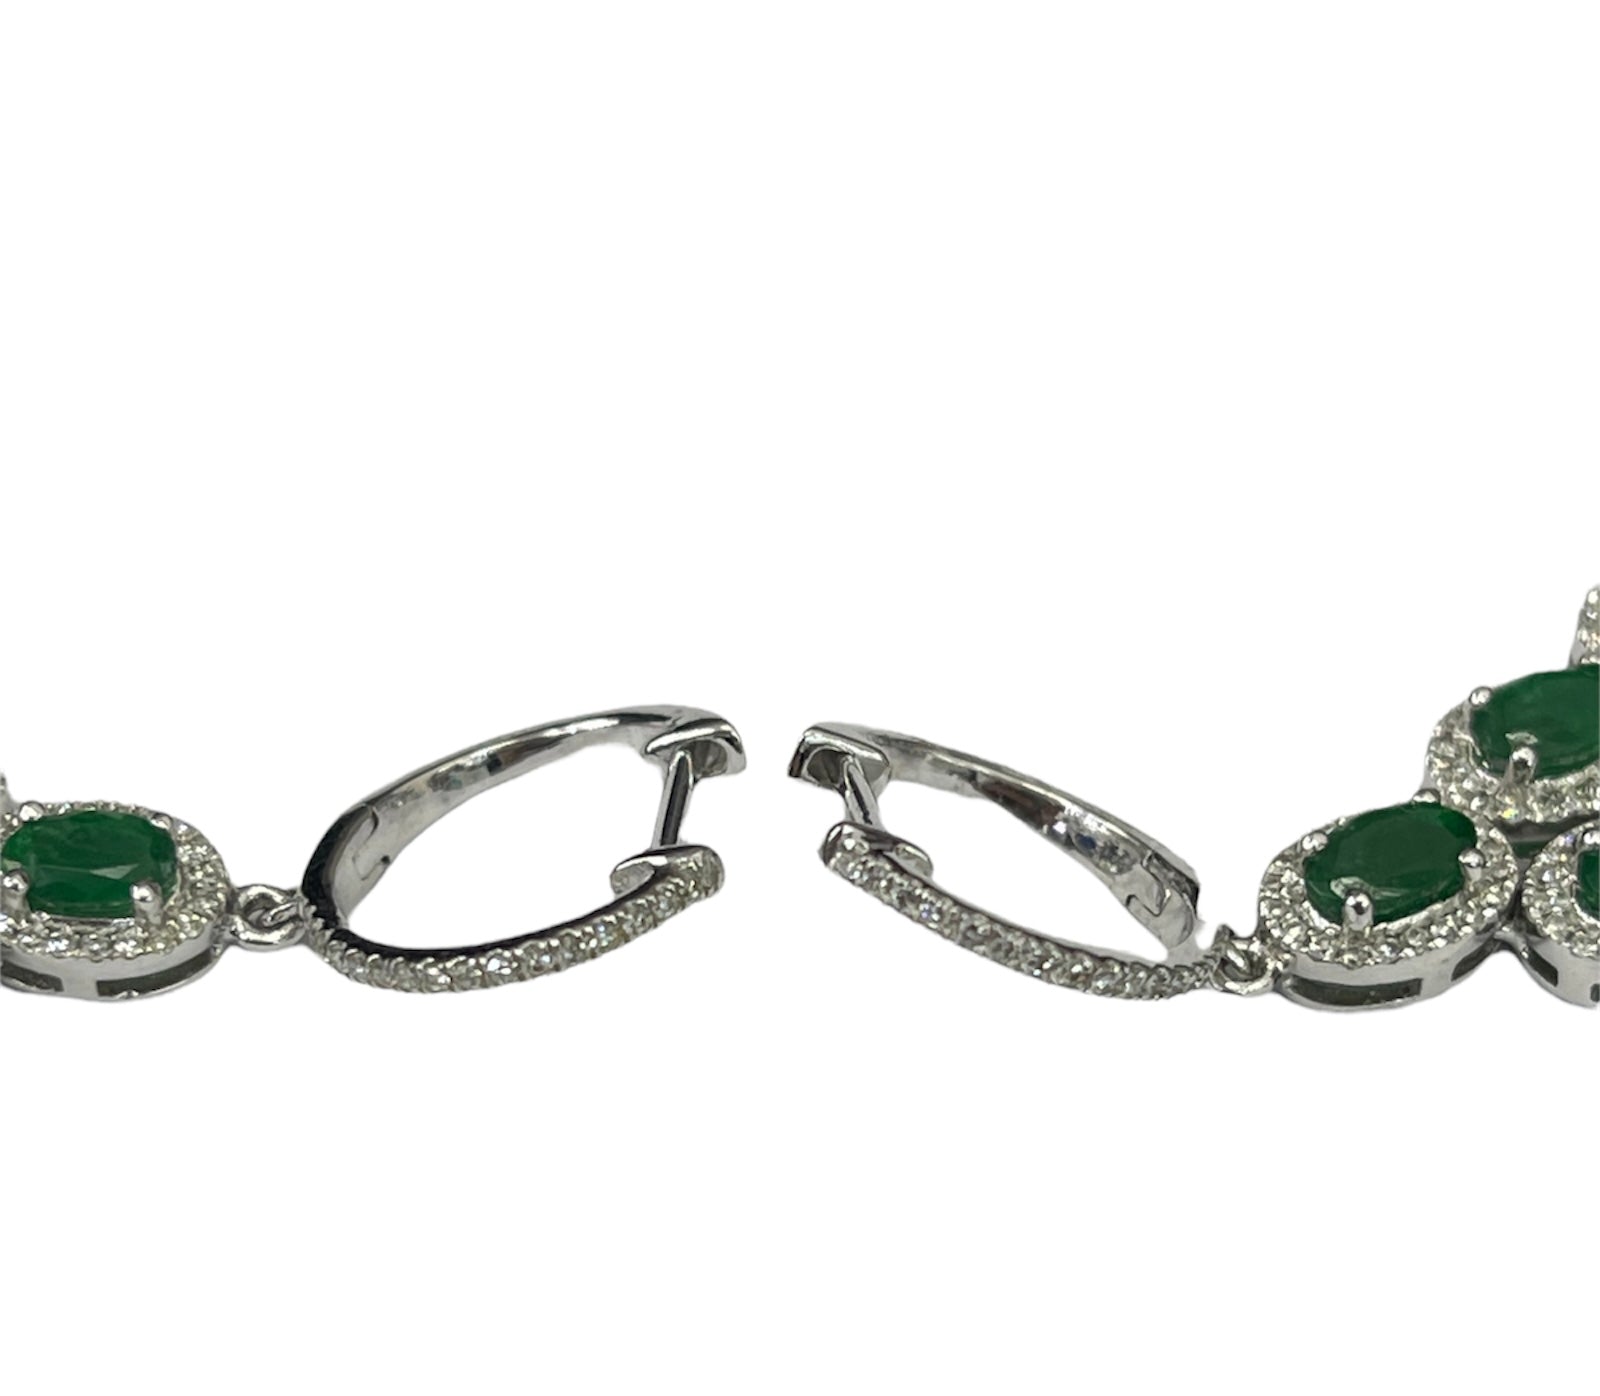 Emerald Gem Oval Cut Dangling Diamond Earrings White Gold 14kt